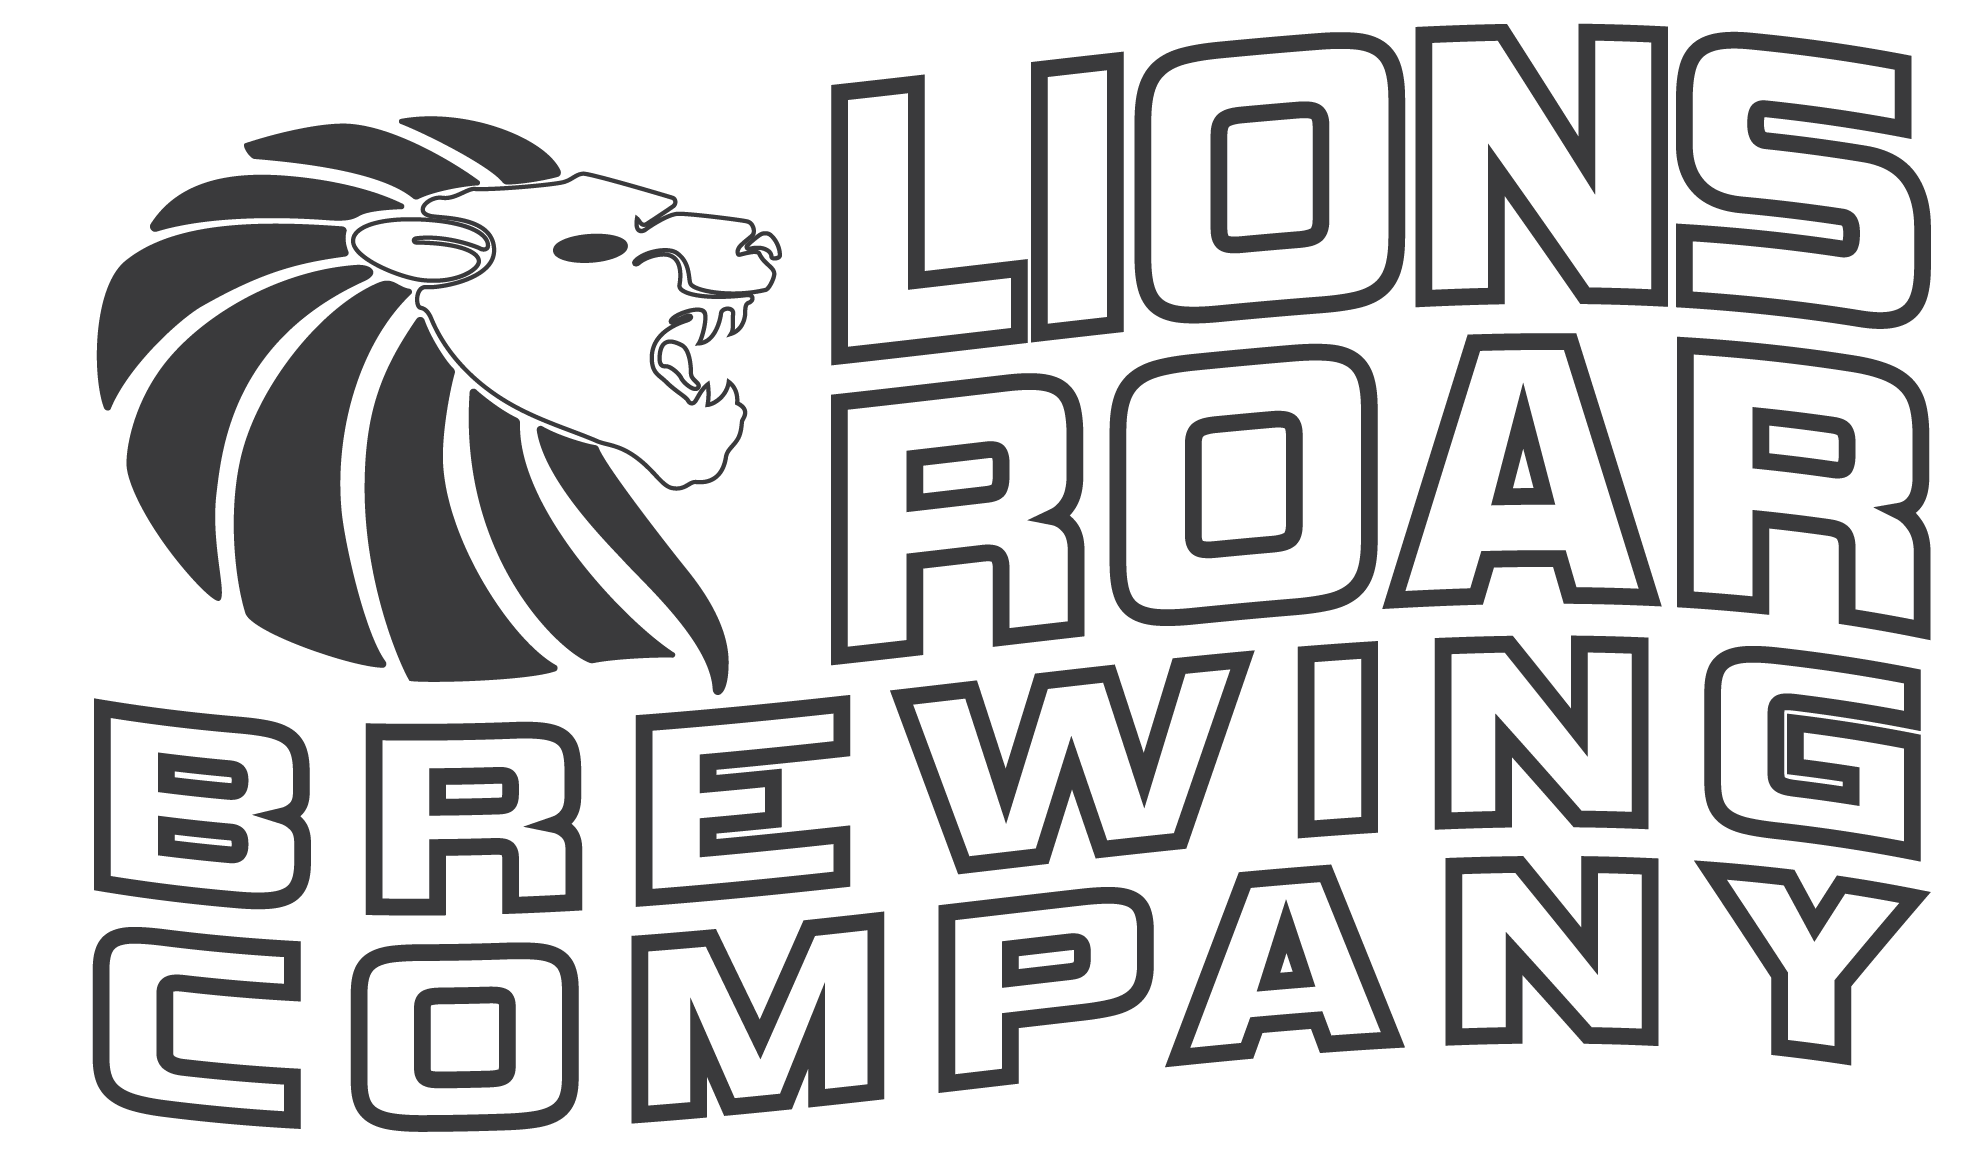 Lions Roar Brewing Company